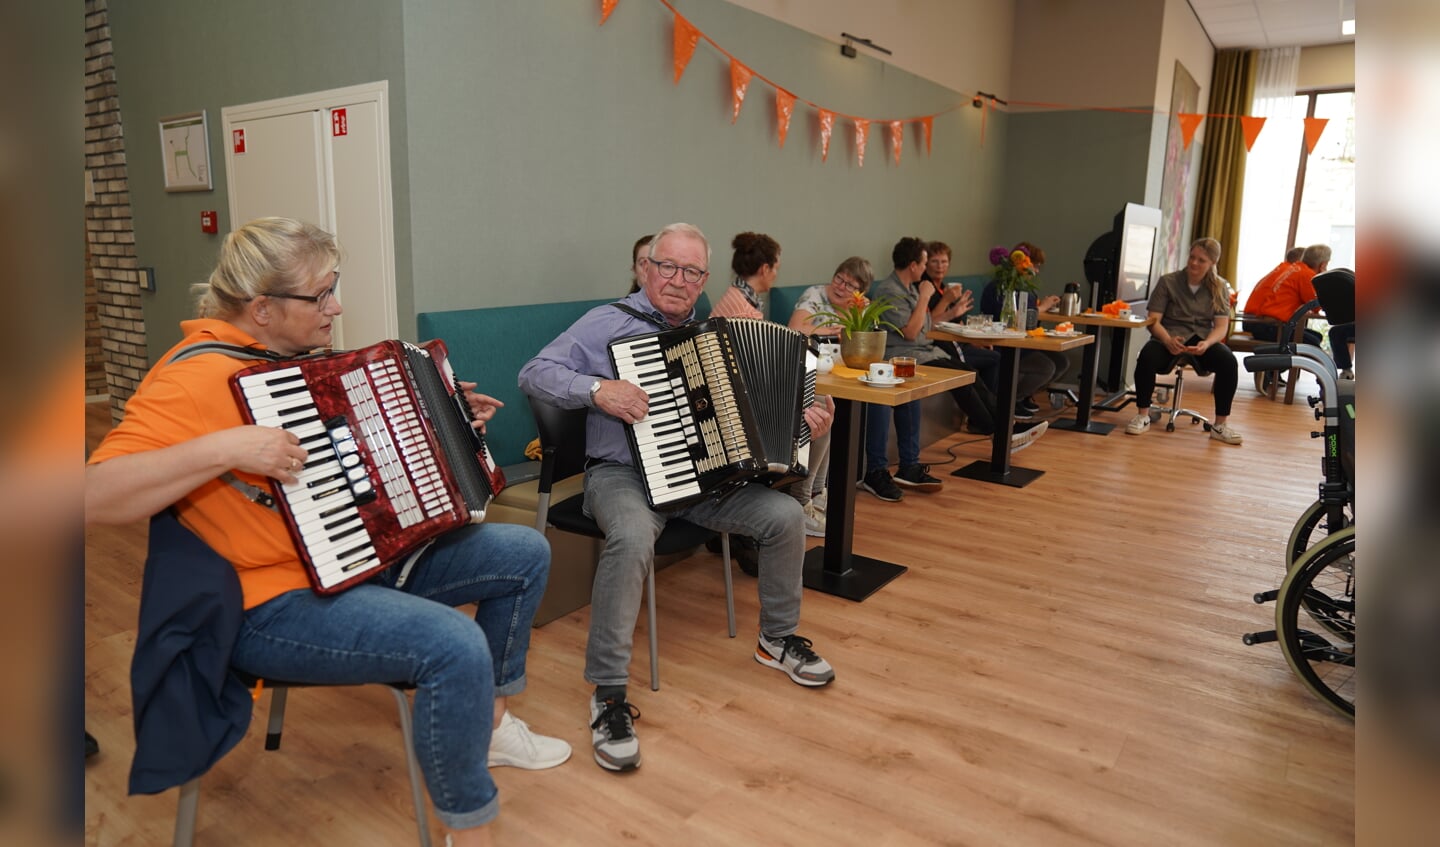 Jaap Geerligs en Annette Wehning brachten met hun accordeonmuziek een glimlach op een ieders gezicht. Foto: Wilma Arink.